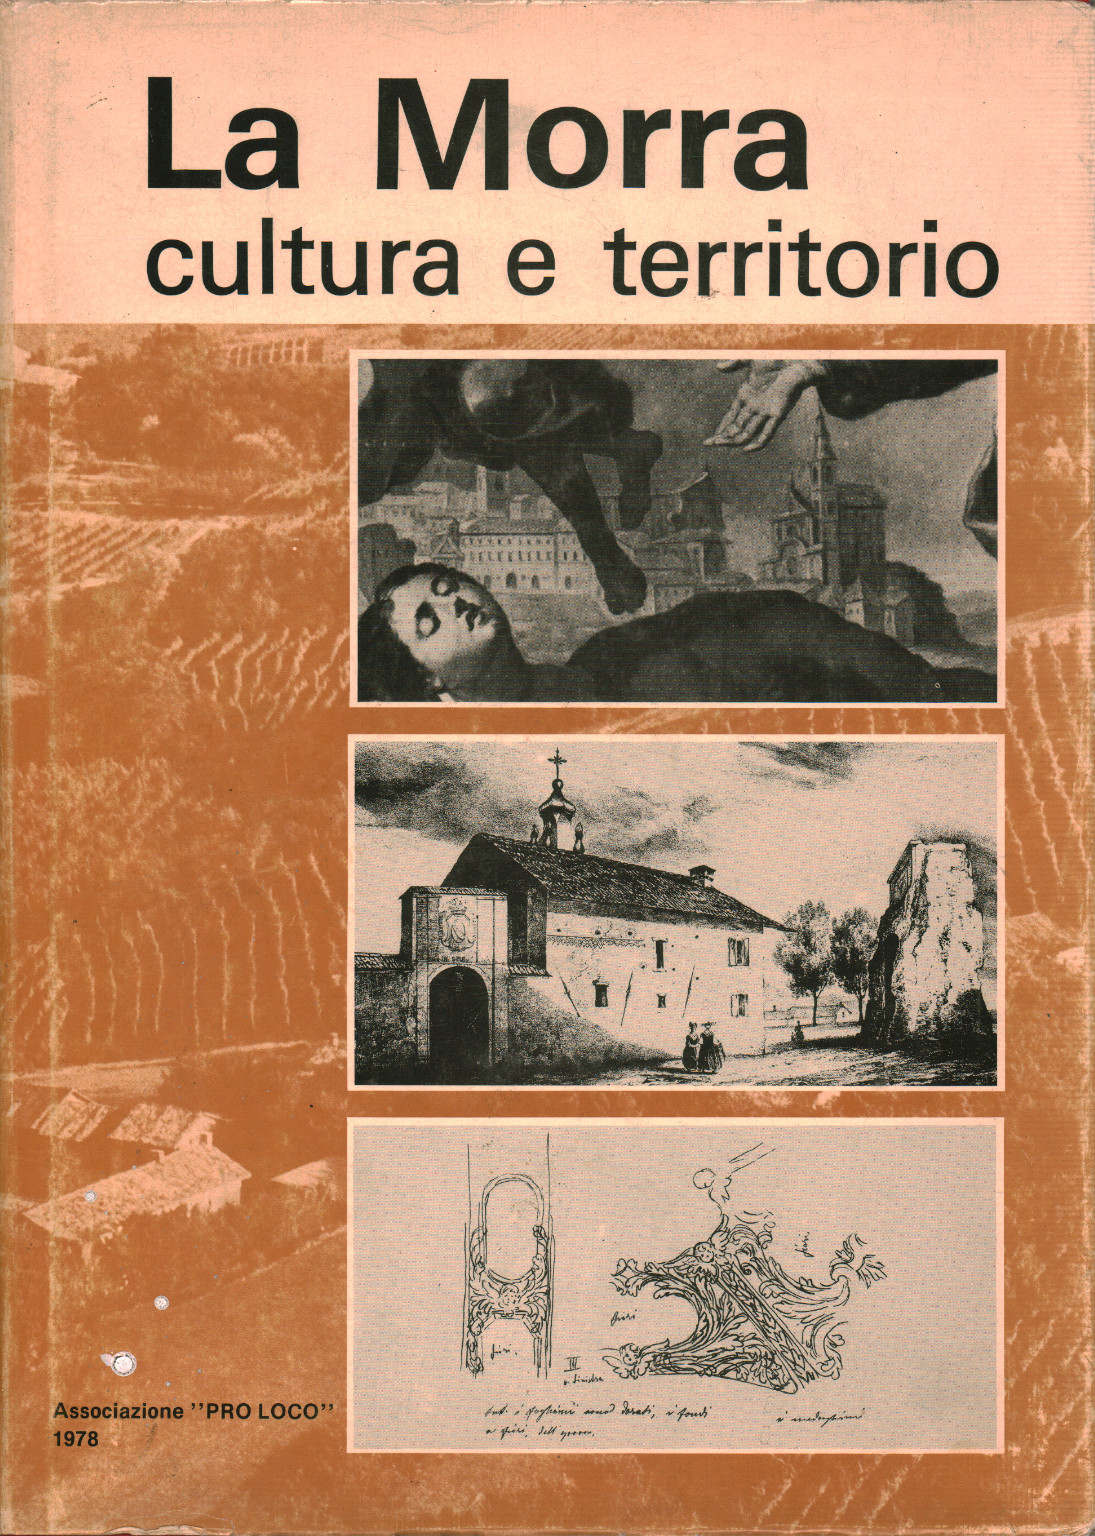 La Morra, culture and territory, s.a.